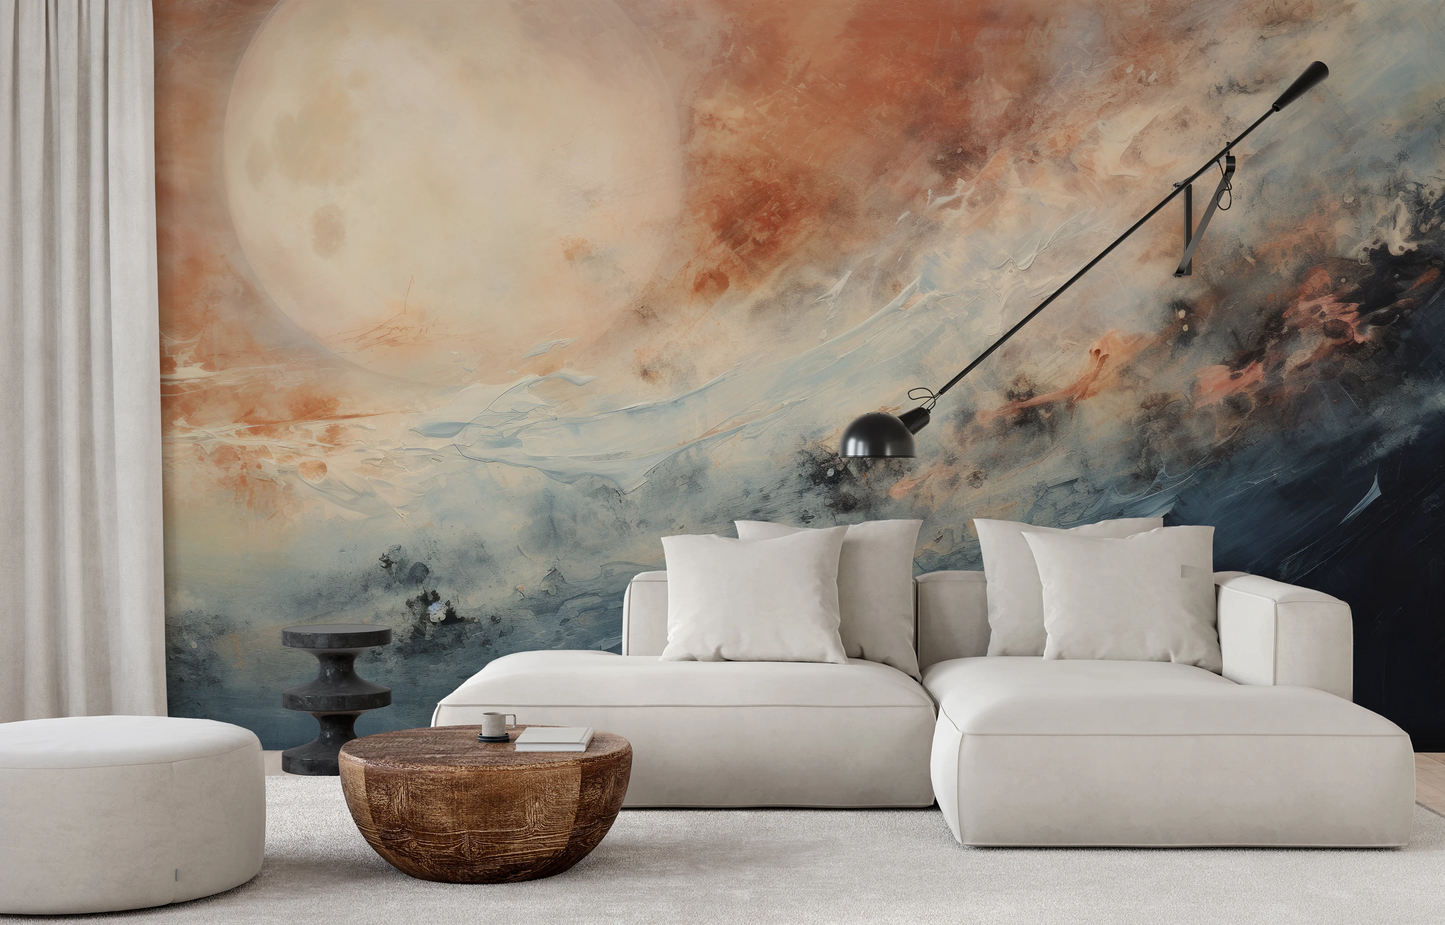 Fototapeta malowana o nazwie Moon's Tranquility pokazana w aranżacji wnętrza.